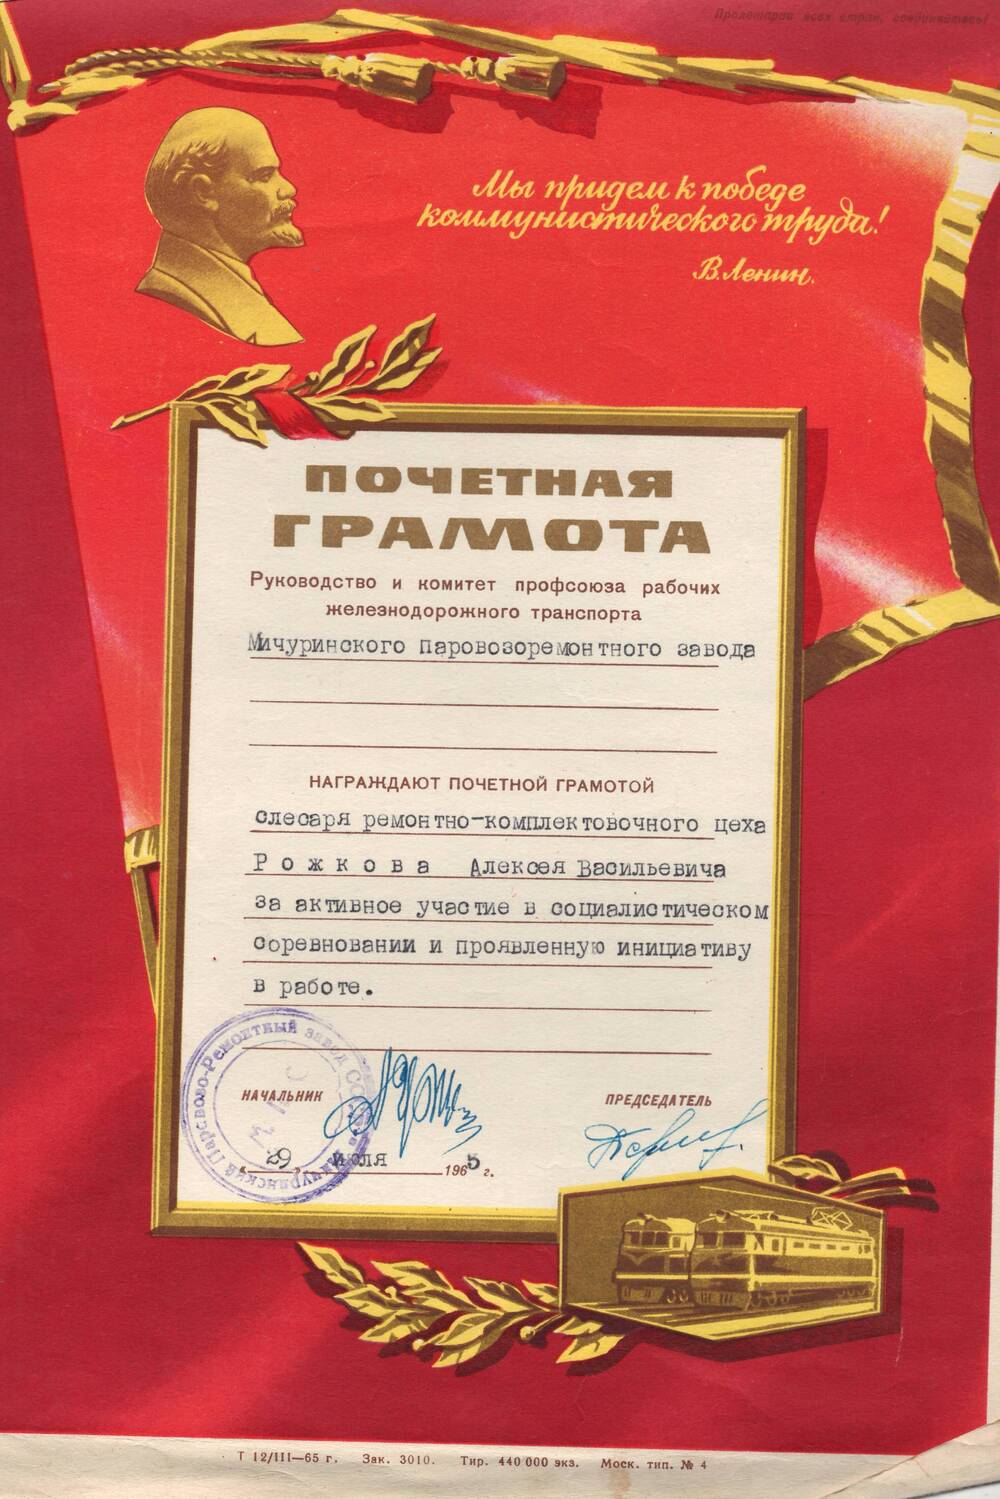 Почетная грамота Рожкова Алексея Васильевича, врученная за активное участие в соц. соревновании и проявленную инициативу в работе